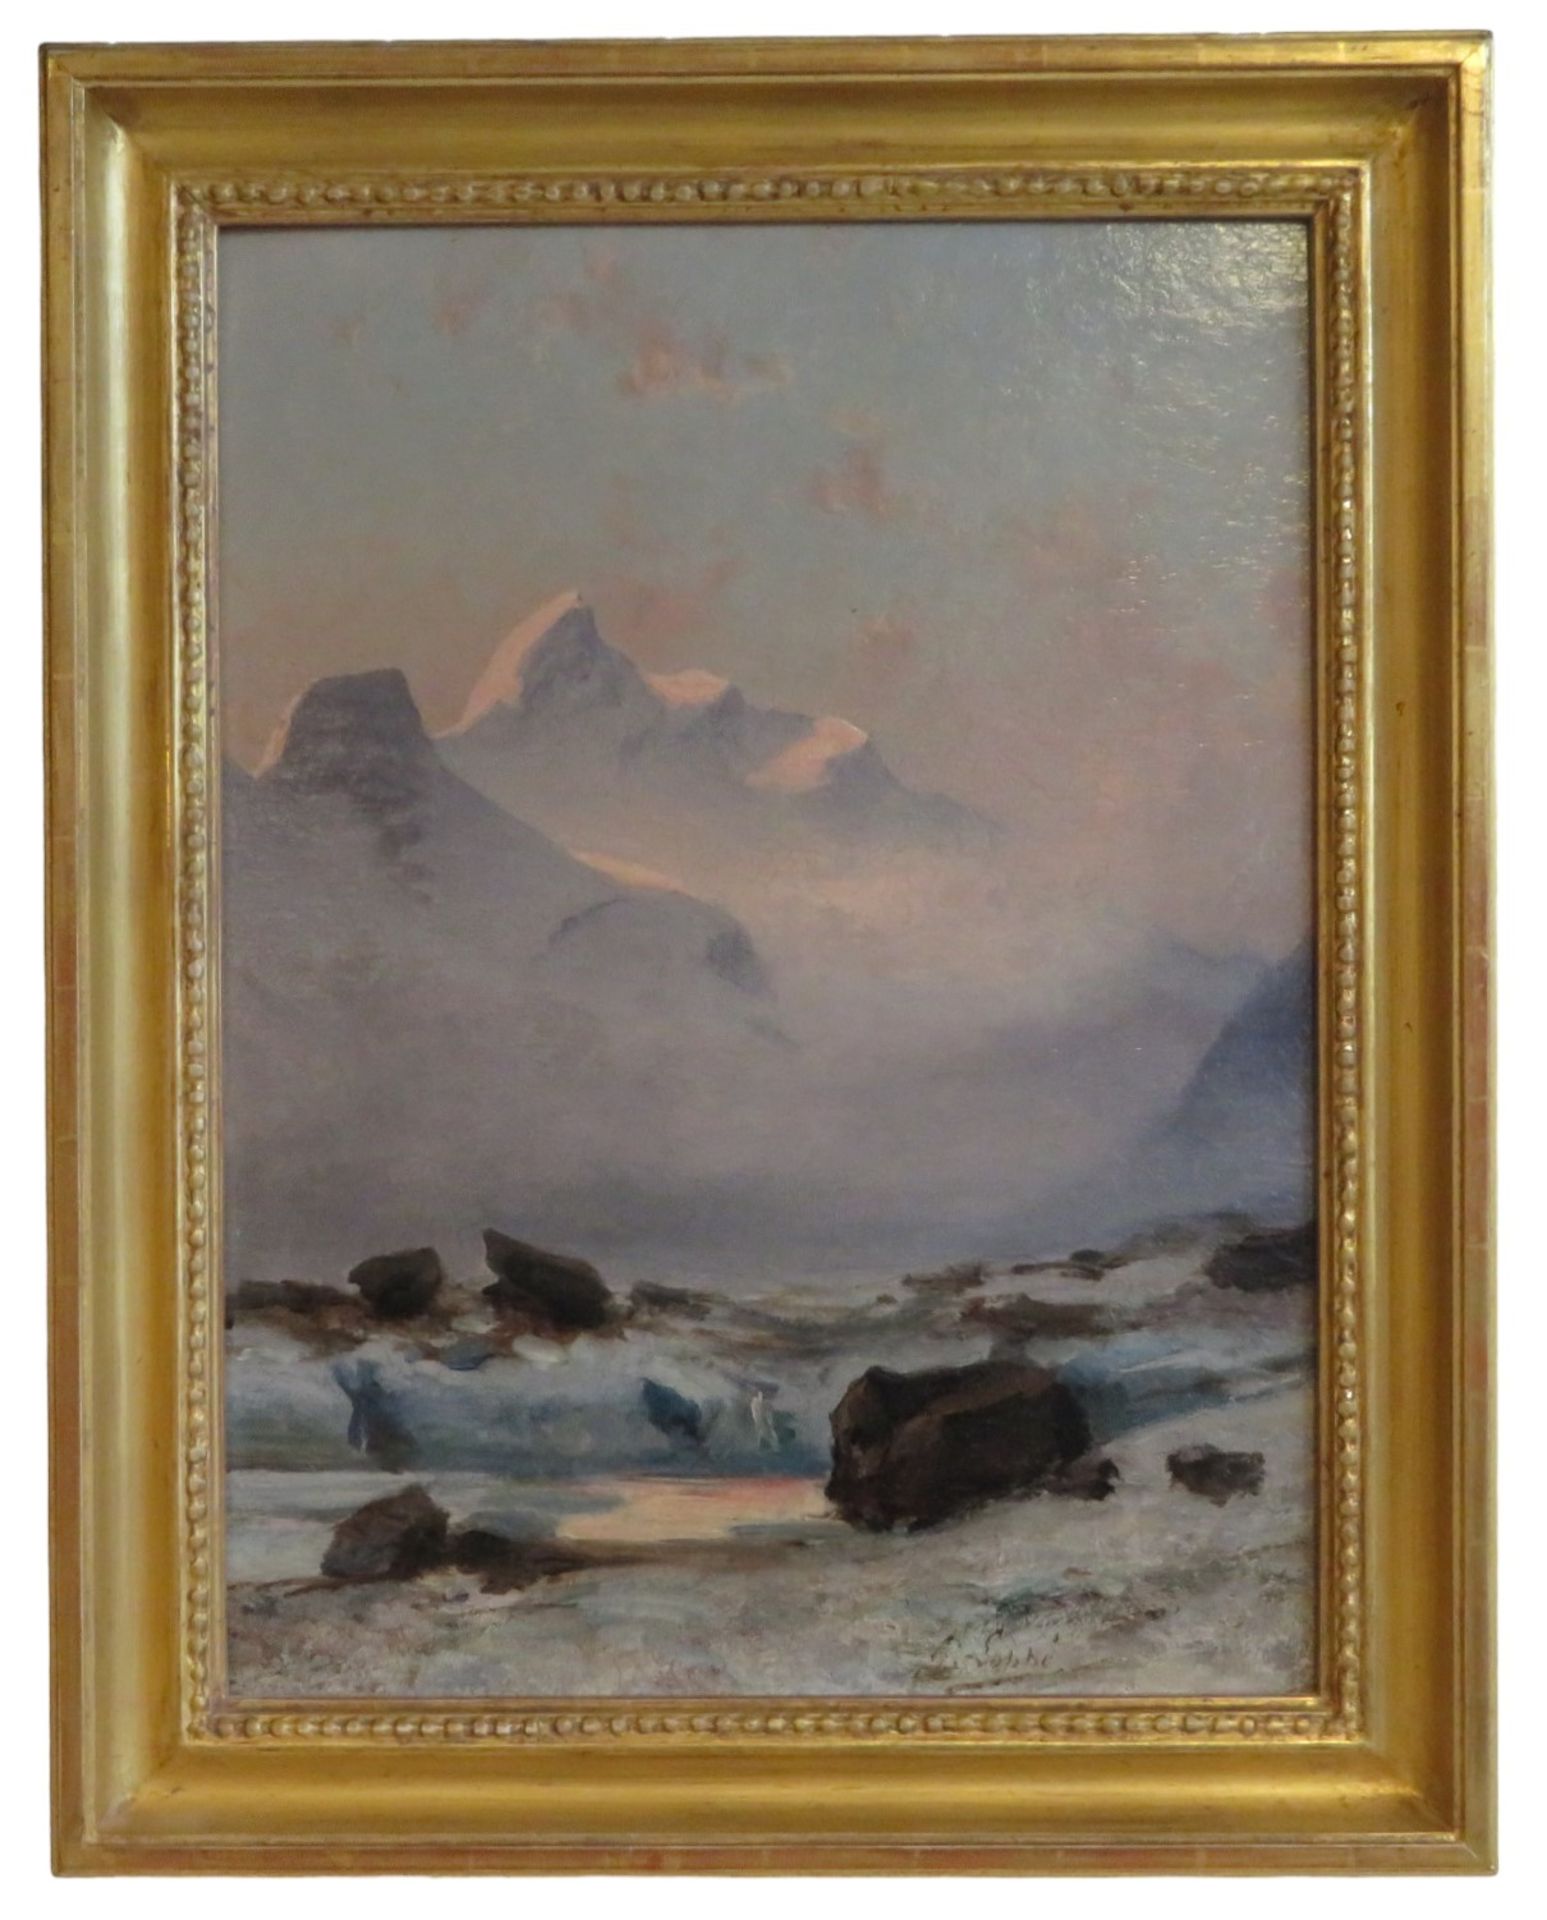 Loppé, Gabriel, 1825 - 1913, Französischer Maler, Fotograf und Bergsteiger, - Image 4 of 6